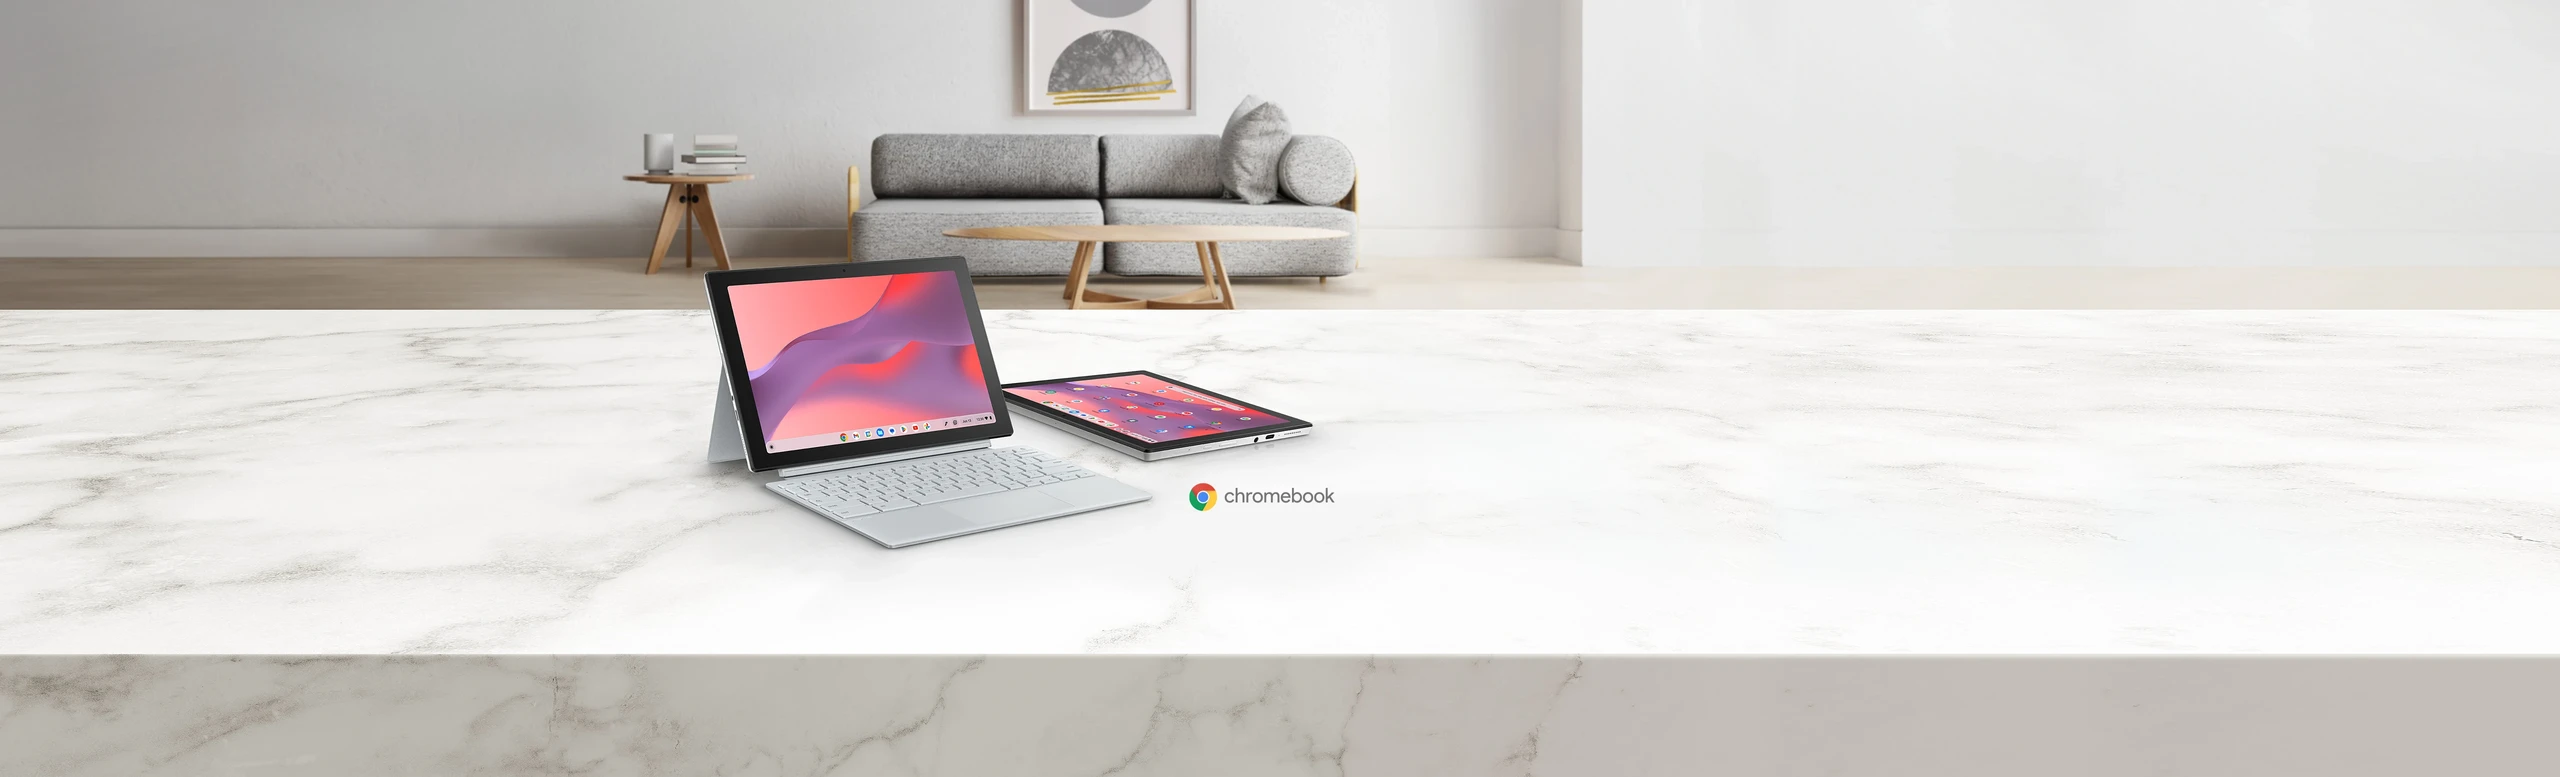 ASUS Chromebook CM30 Detachable